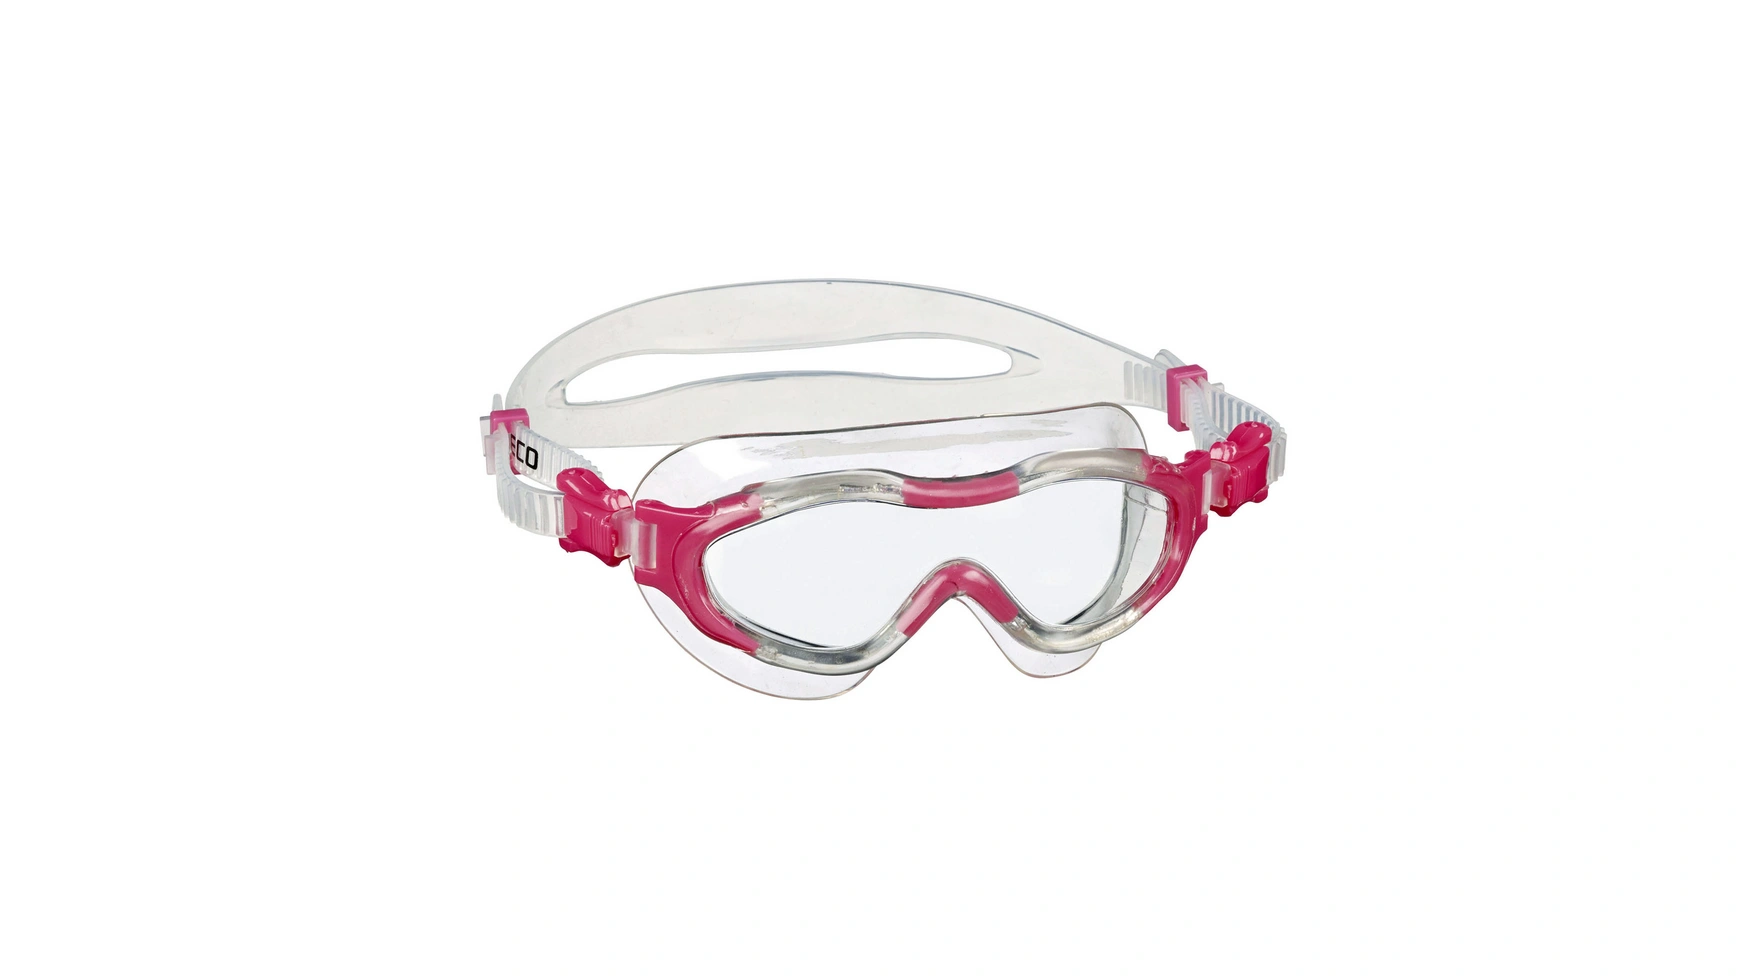 Beco Alicante 4+ Мягкие панорамные очки для детей от 4 лет и старше очки для плавания водонепроницаемые противотуманные hd очки для плавания с градусом очки для дайвинга для женщин